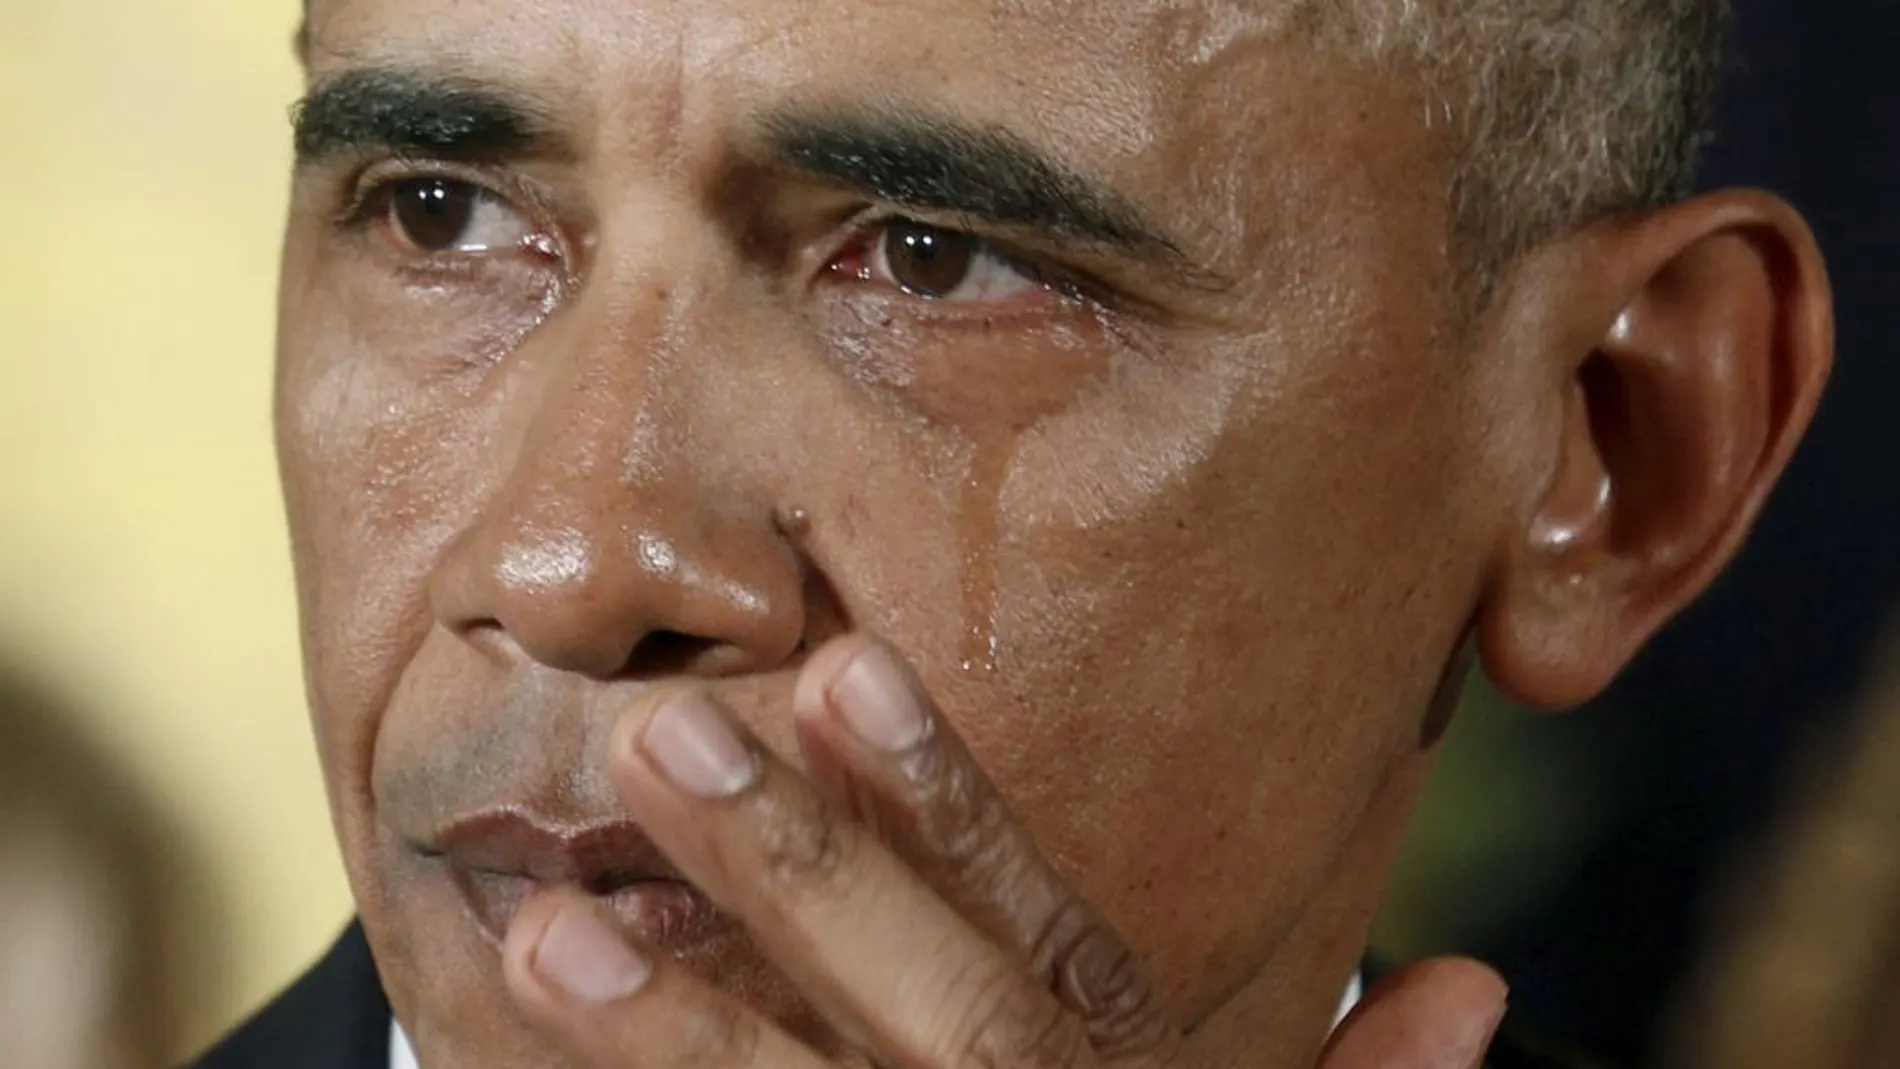 El presidente estadounidense, Barack Obama, ha llorado al recordar a las víctimas de las armas de fuego